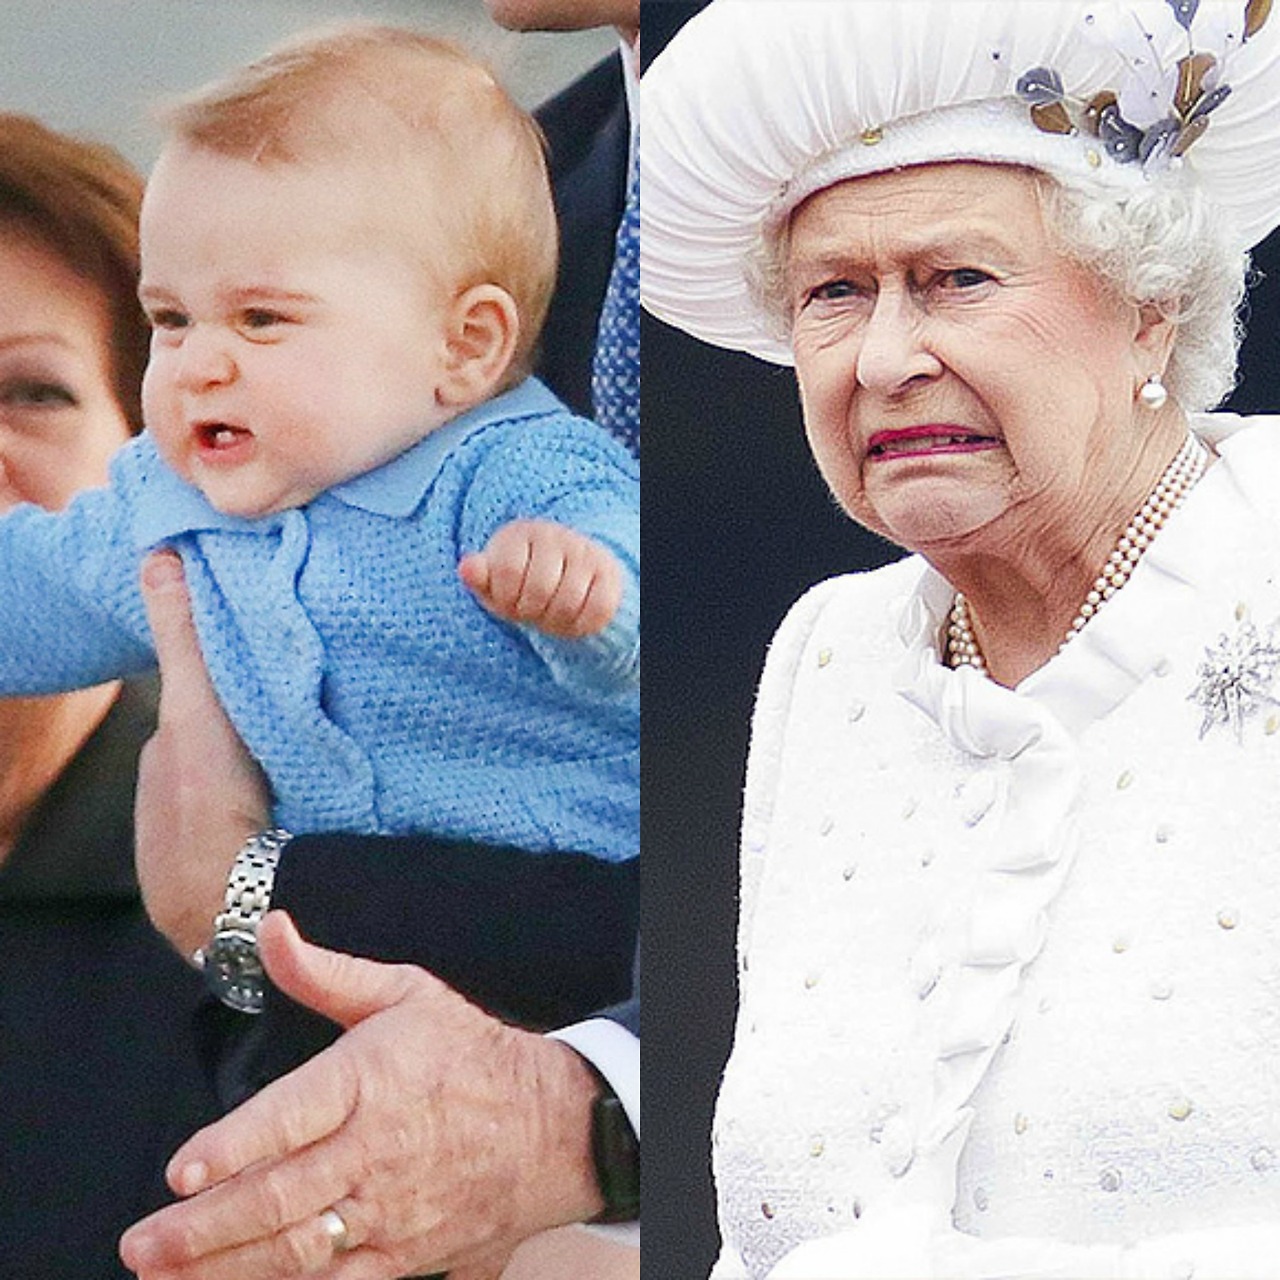 Vicces fotók: György herceg nagyon hasonlít dédnagymamájához Erzsébet királynéhoz